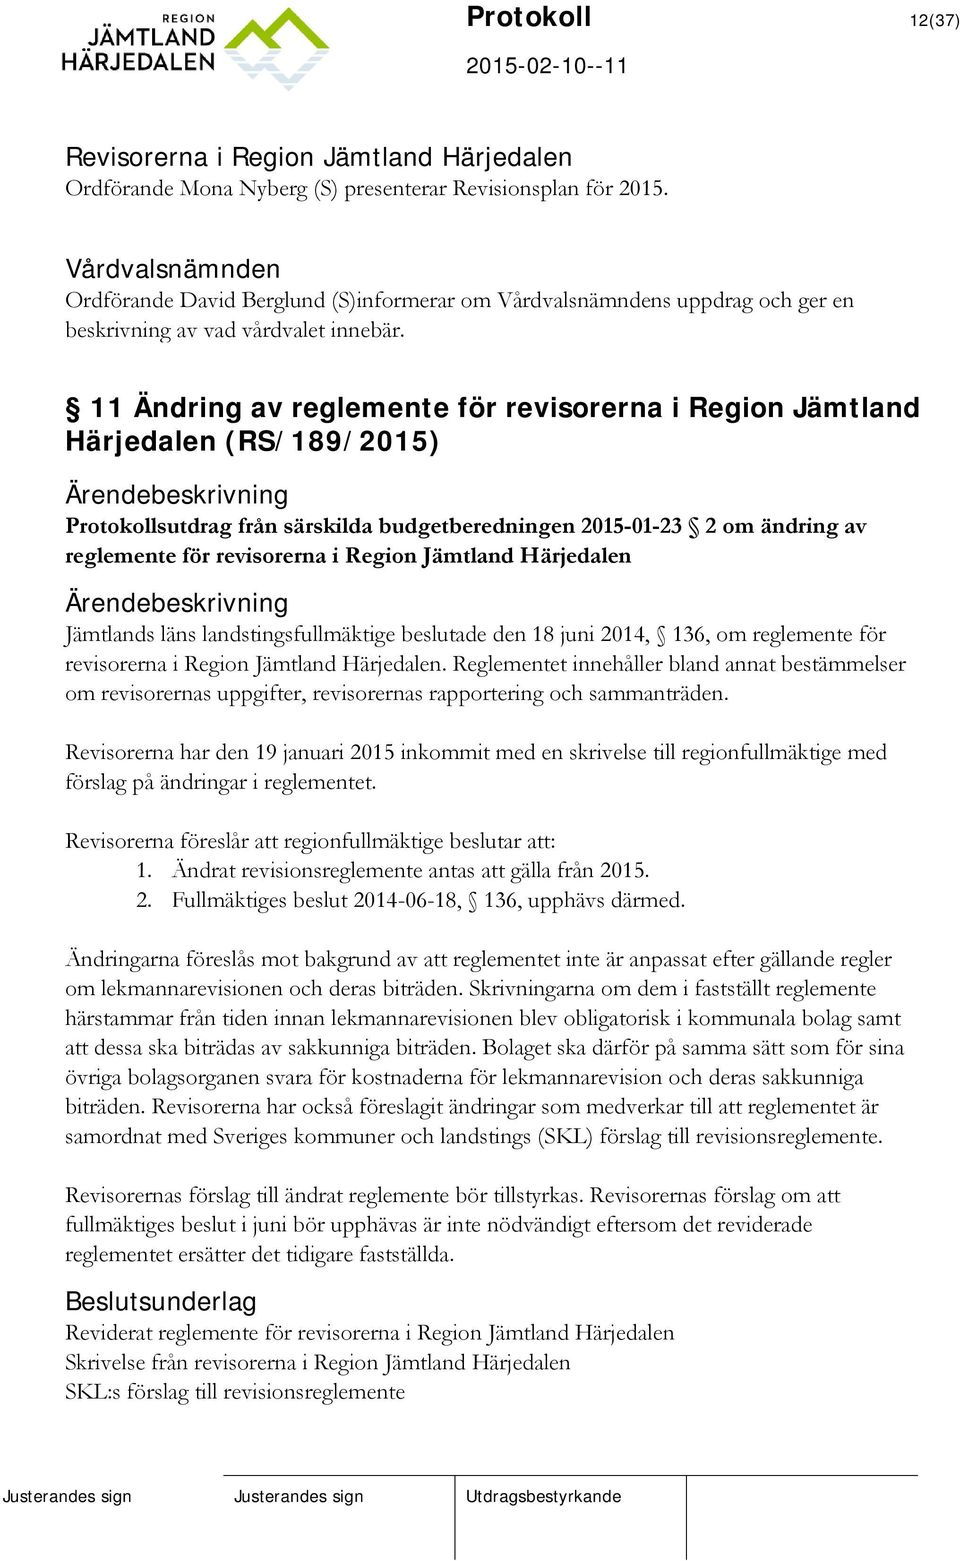 11 Ändring av reglemente för revisorerna i Region Jämtland Härjedalen (RS/189/2015) Protokollsutdrag från särskilda budgetberedningen 2015-01-23 2 om ändring av reglemente för revisorerna i Region